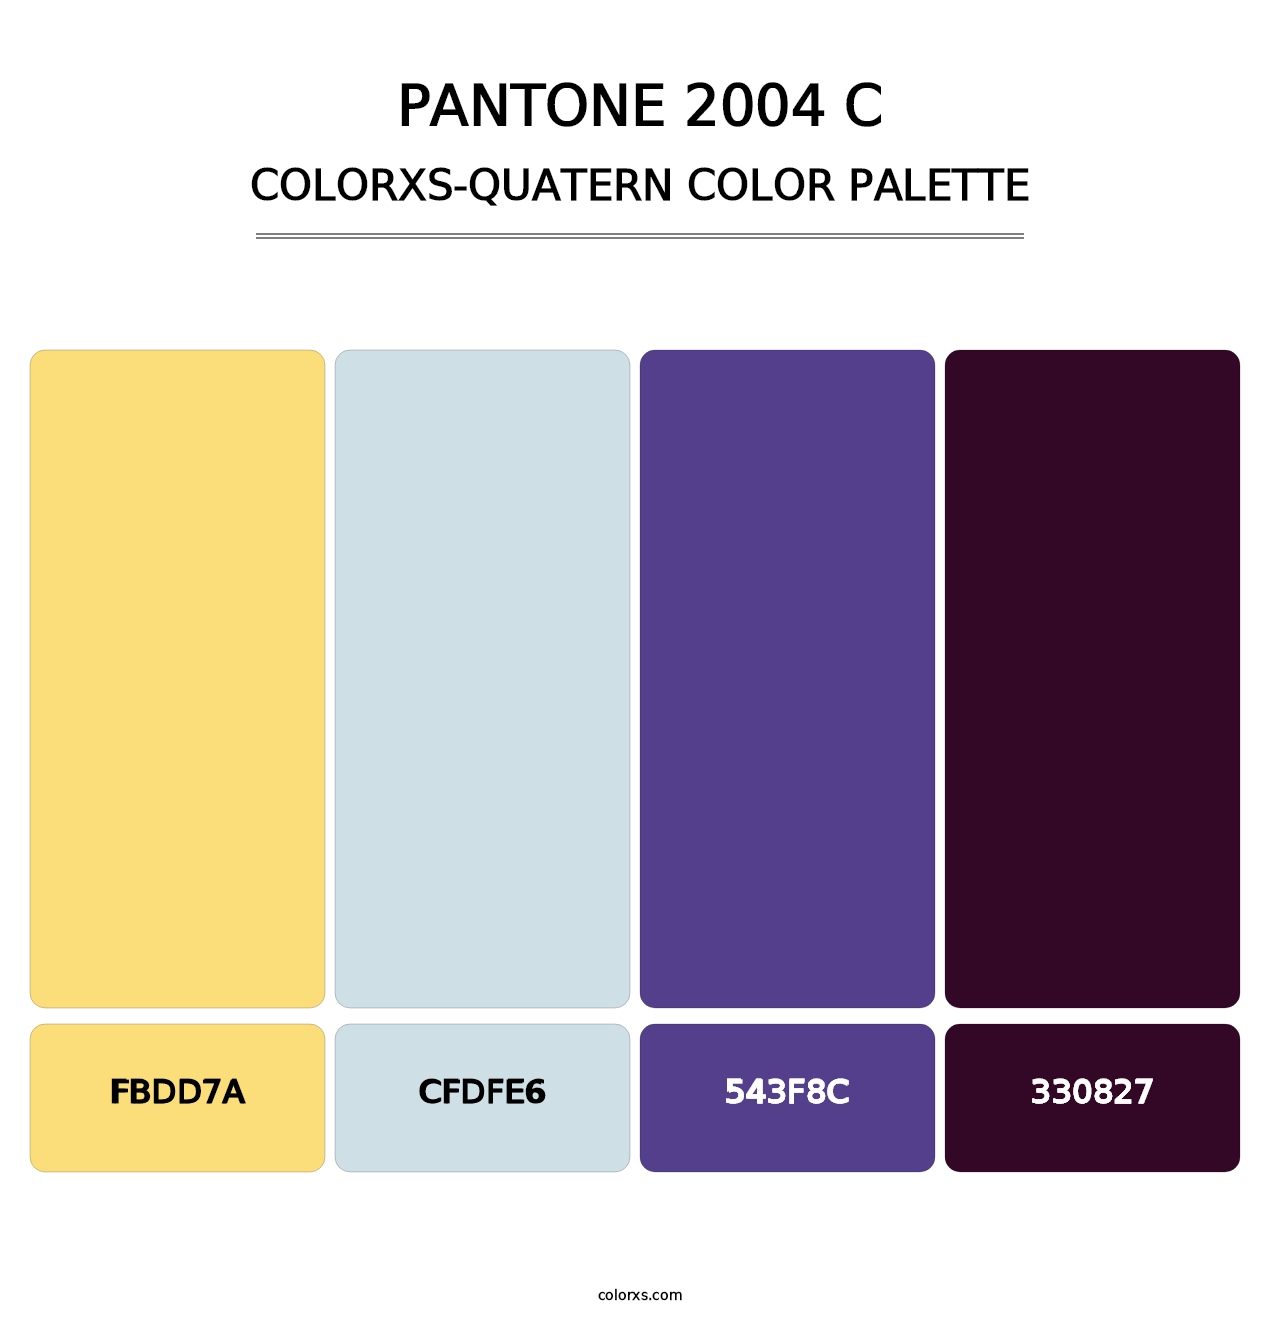 PANTONE 2004 C - Colorxs Quatern Palette